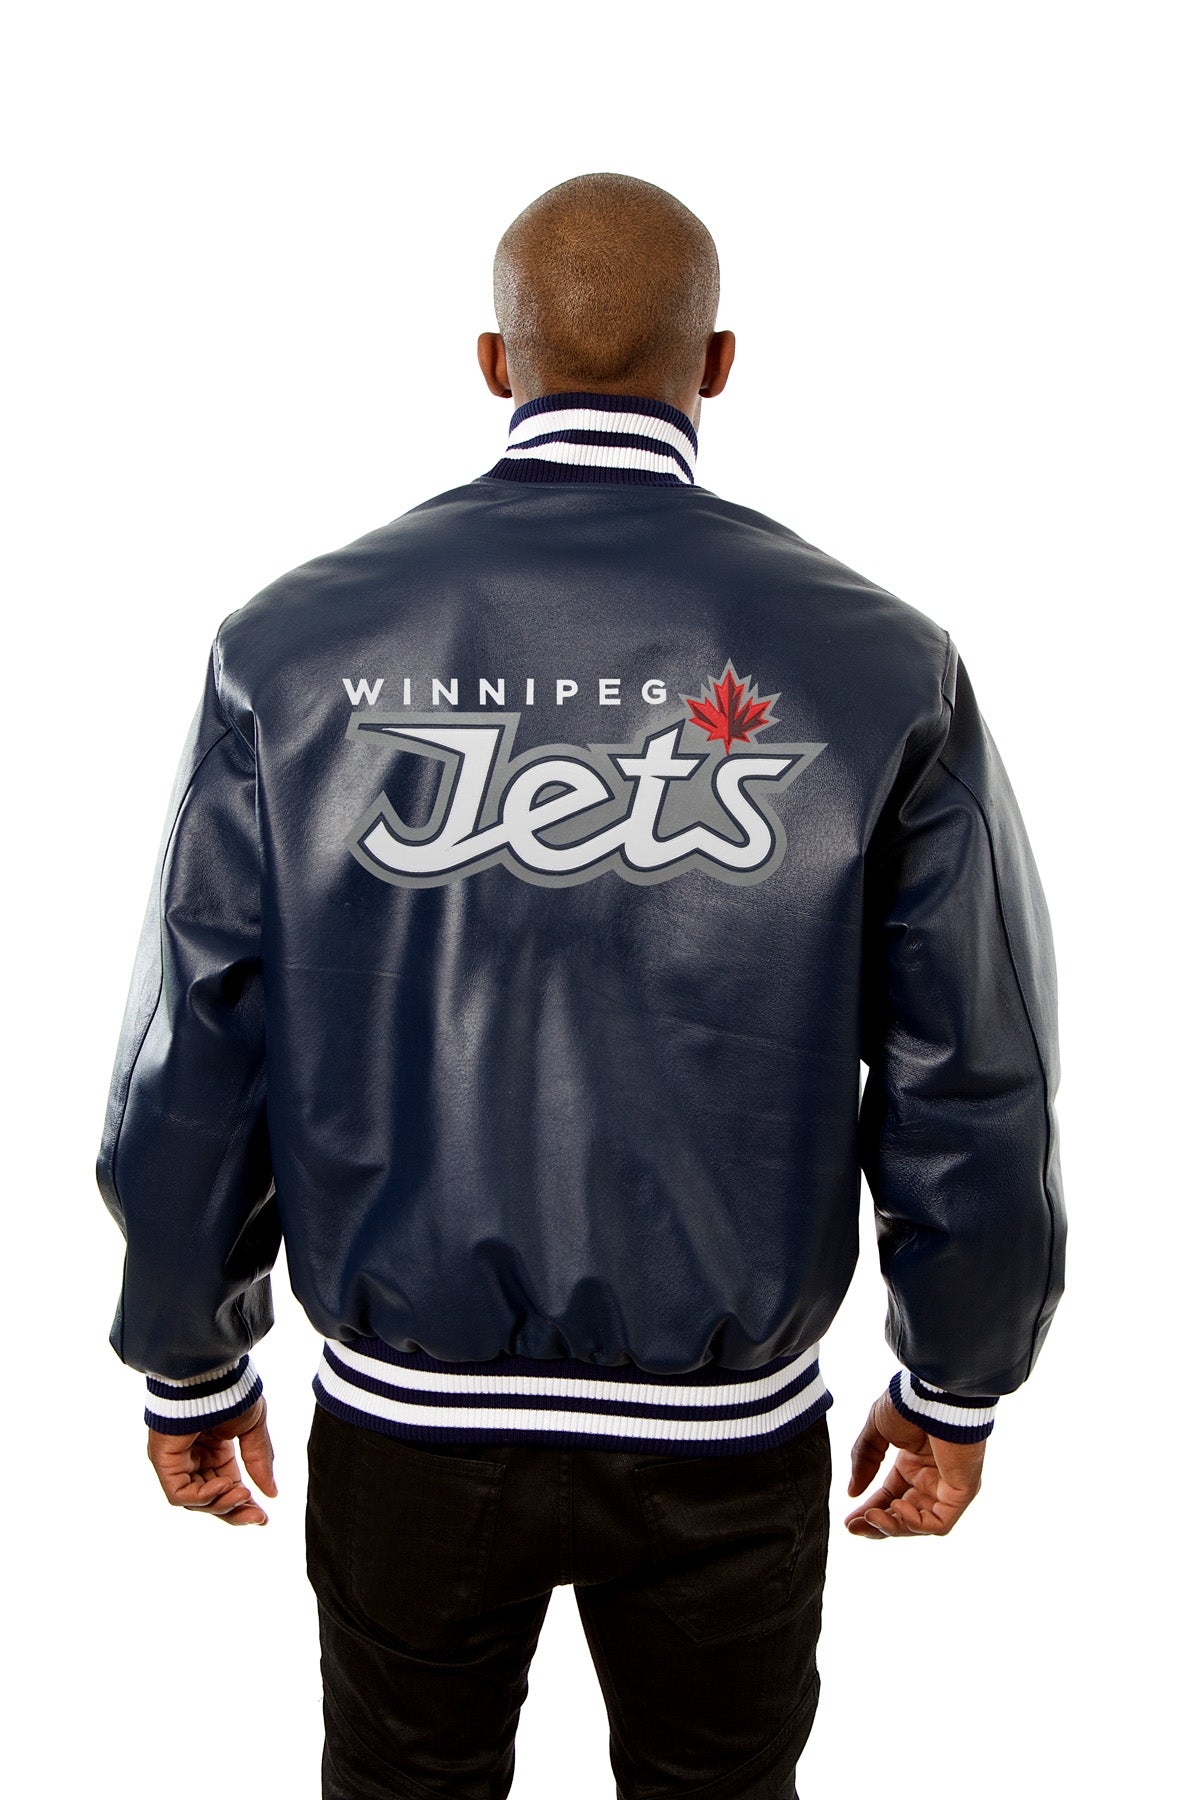 Winnipeg Jets Full Leather Jacket